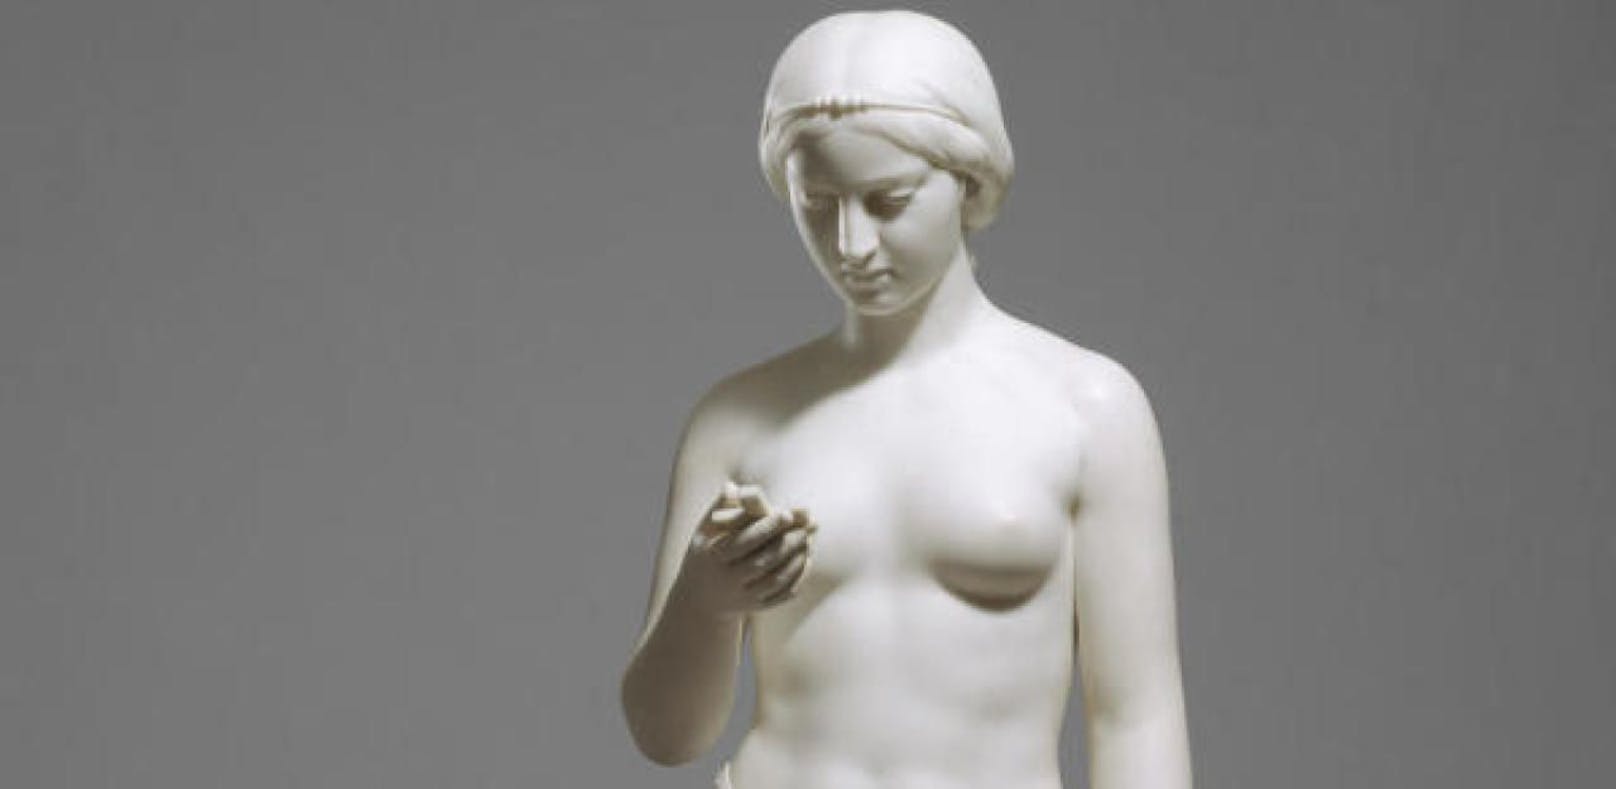 Hält diese Statue aus 1856 ein Handy in der Hand?